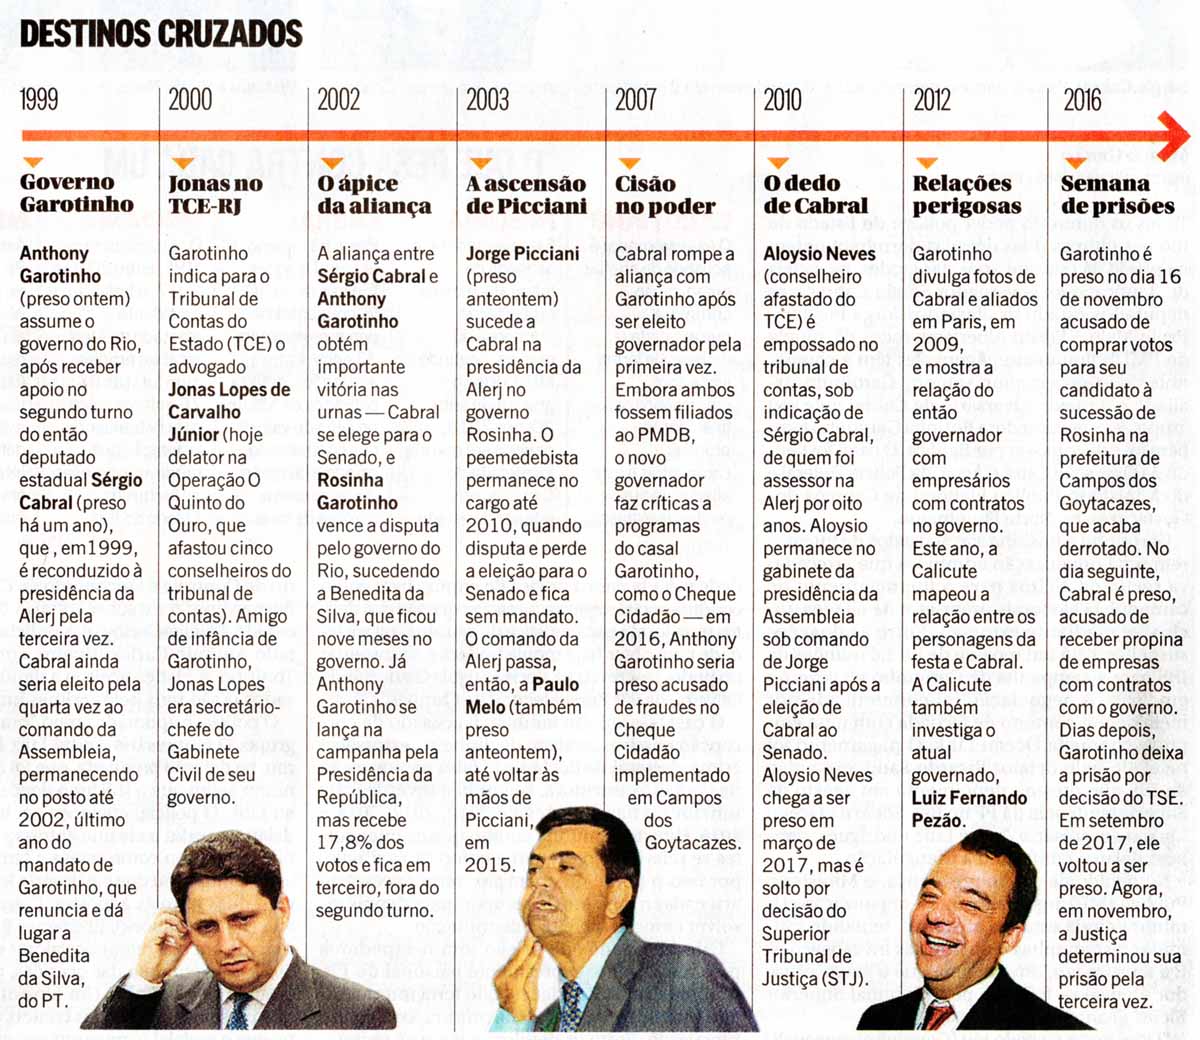 Ex-governadores do Rio: Destinos cruzados - O Globo